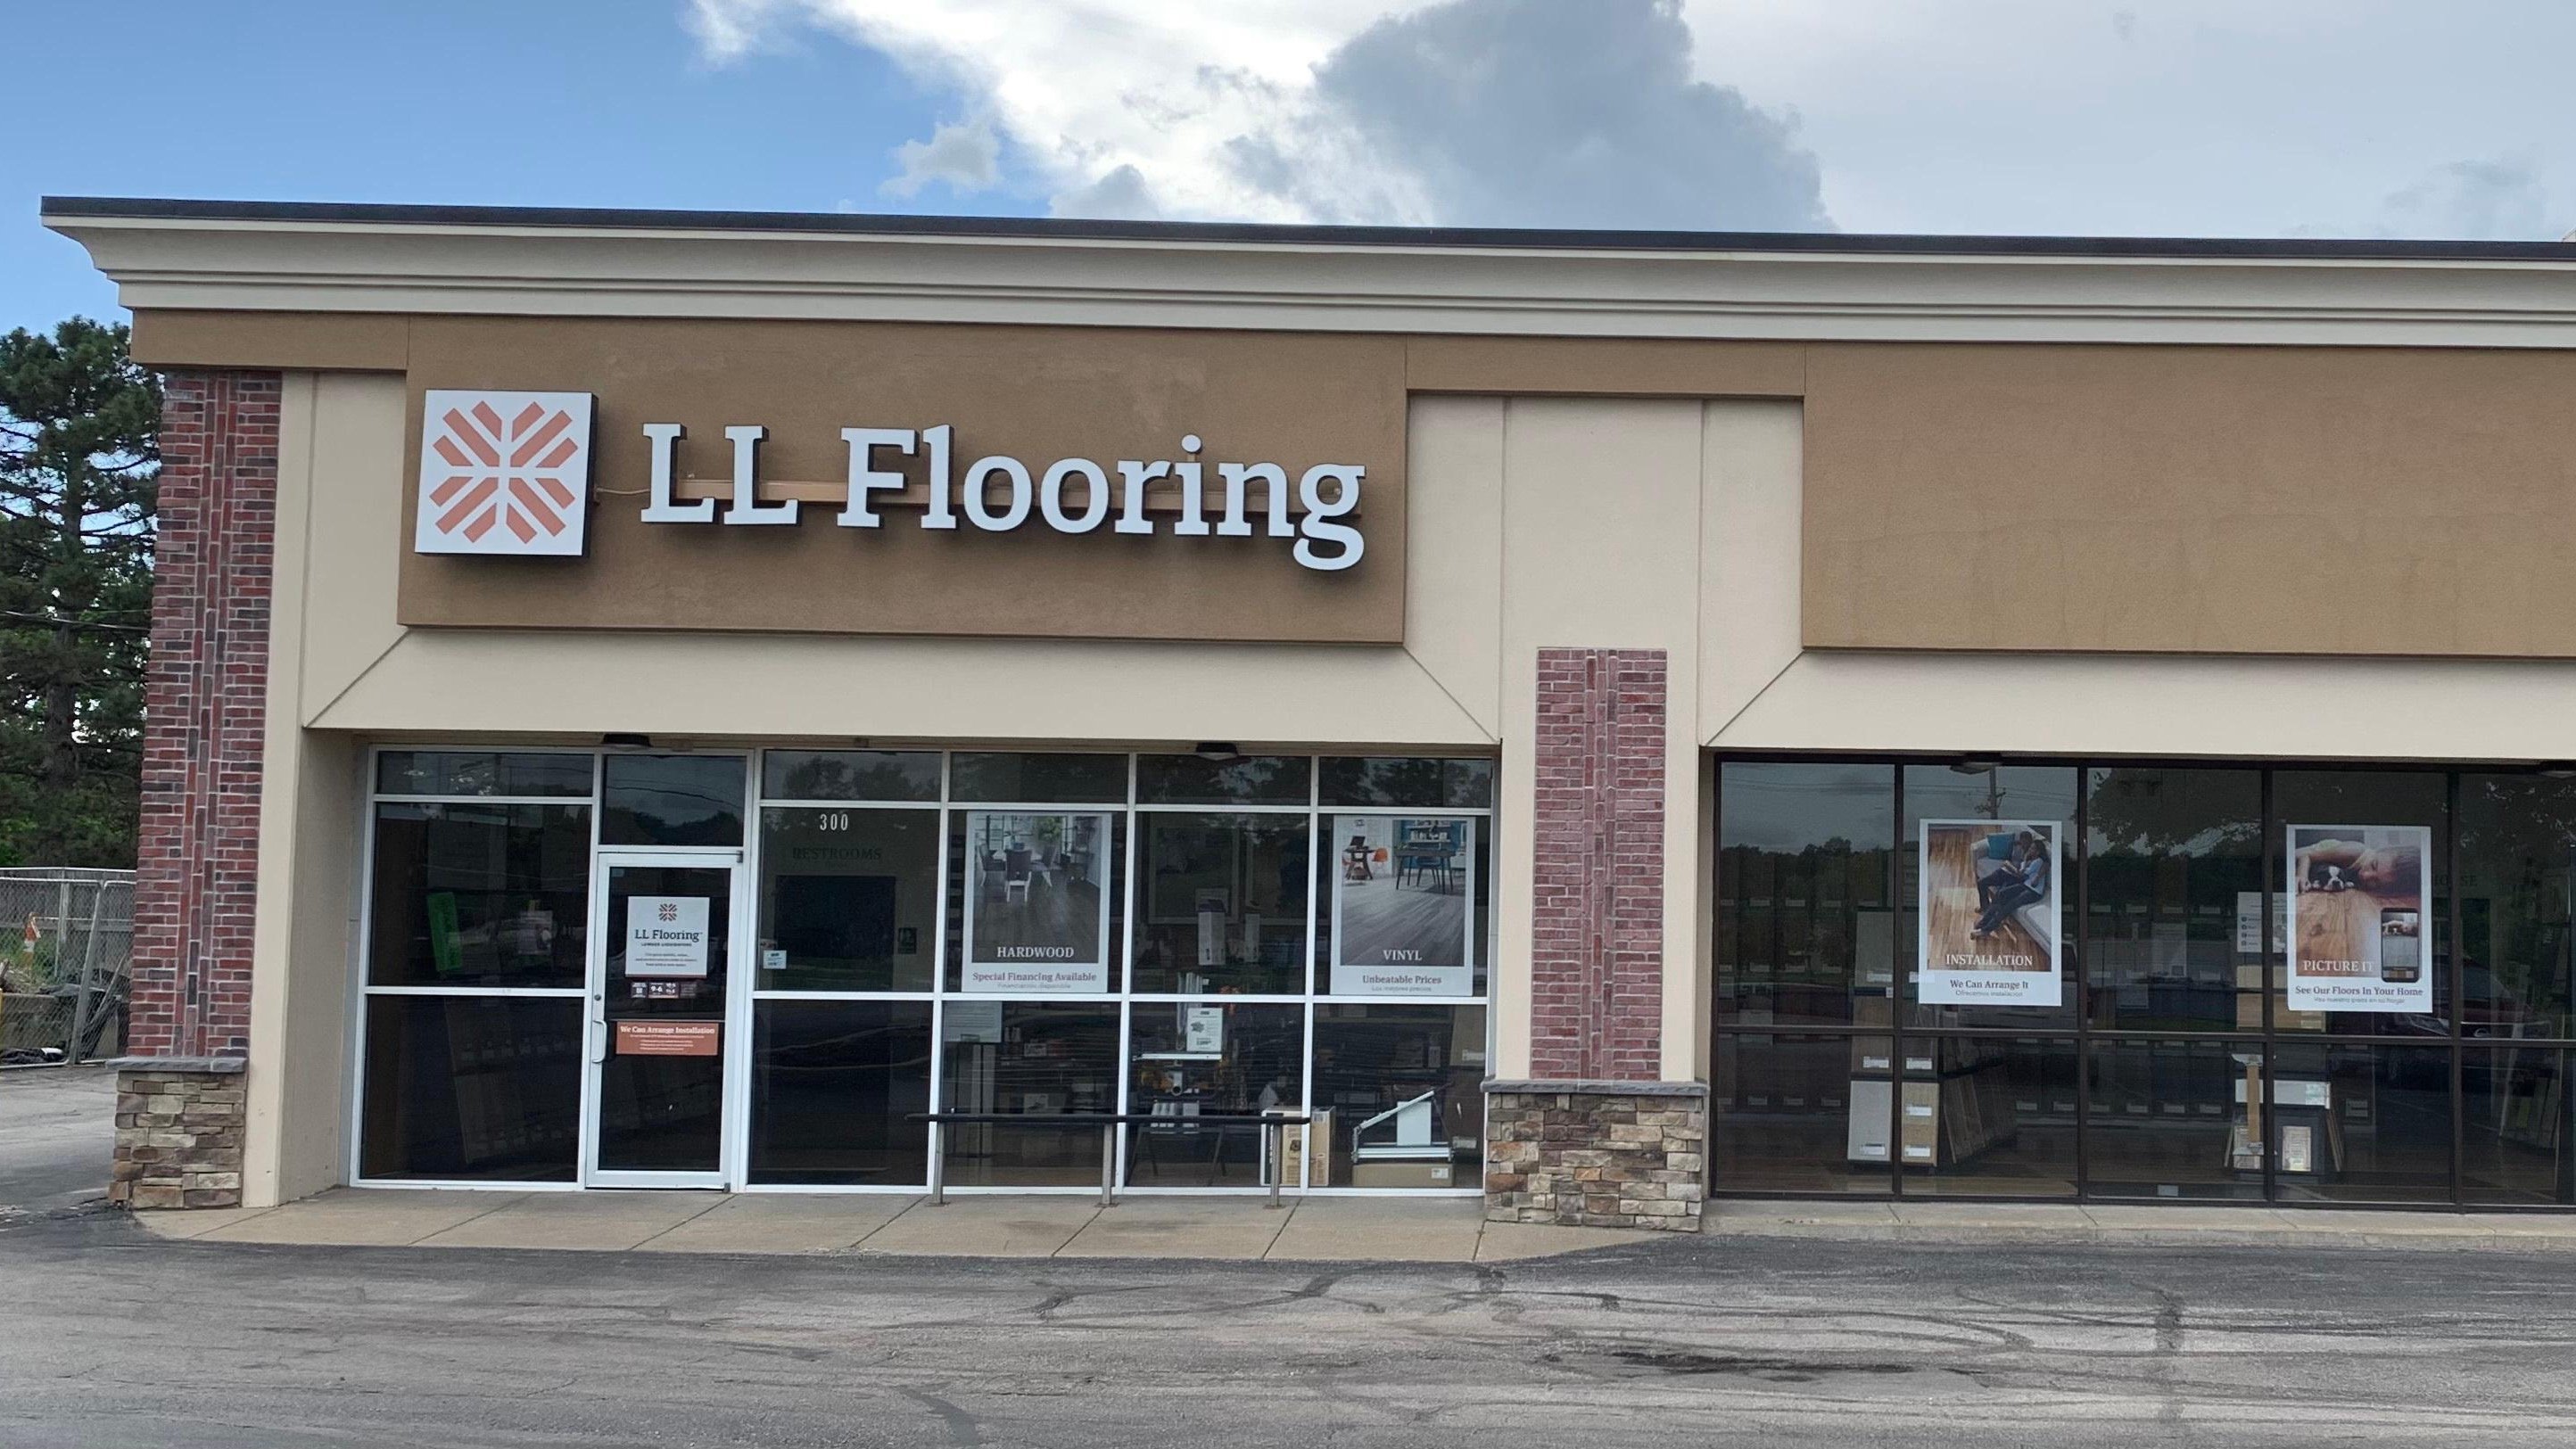 LL Flooring (Lumber Liquidators) #1251 - Lee's Summit | 300 NE 291 Highway